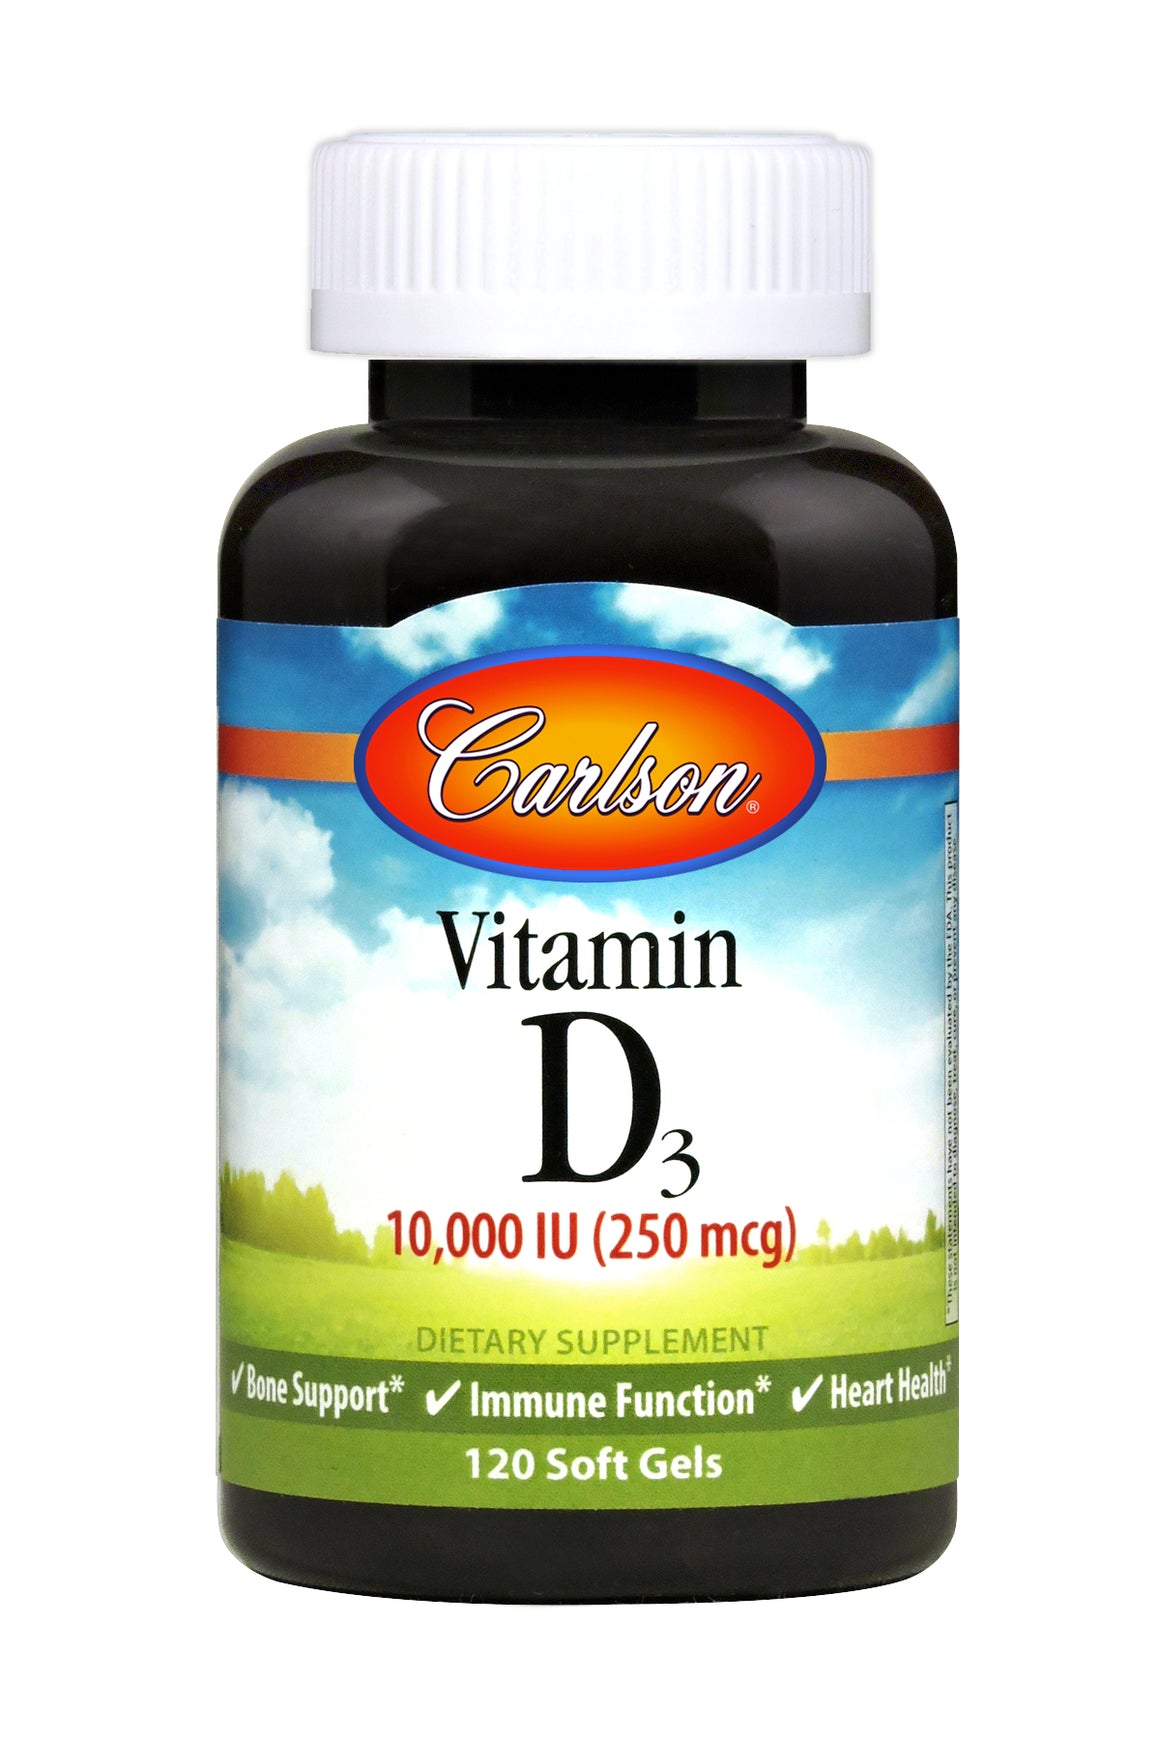 A bottle of Carlson Vitamin D3 10 000 IU